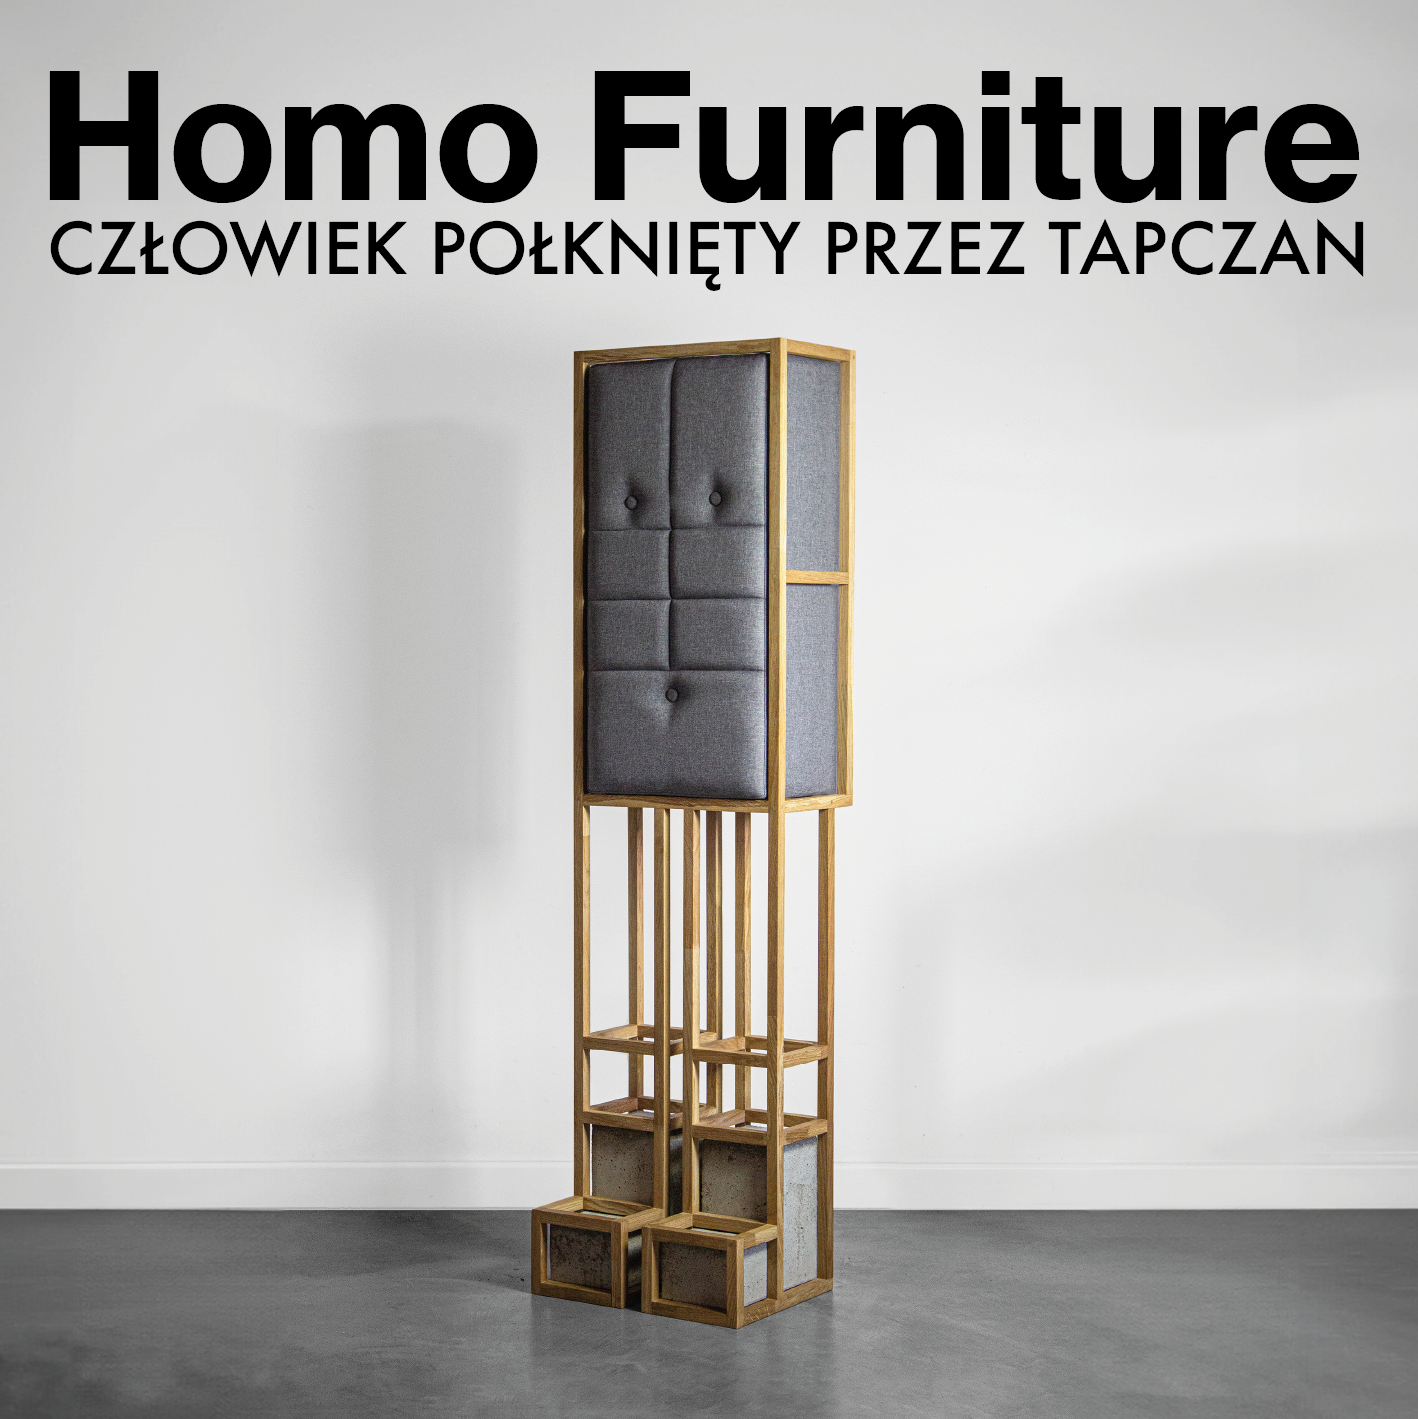 Homo Furniture. Człowiek połknięty przez tapczan – wystawa czasowa Bartosza Muchy